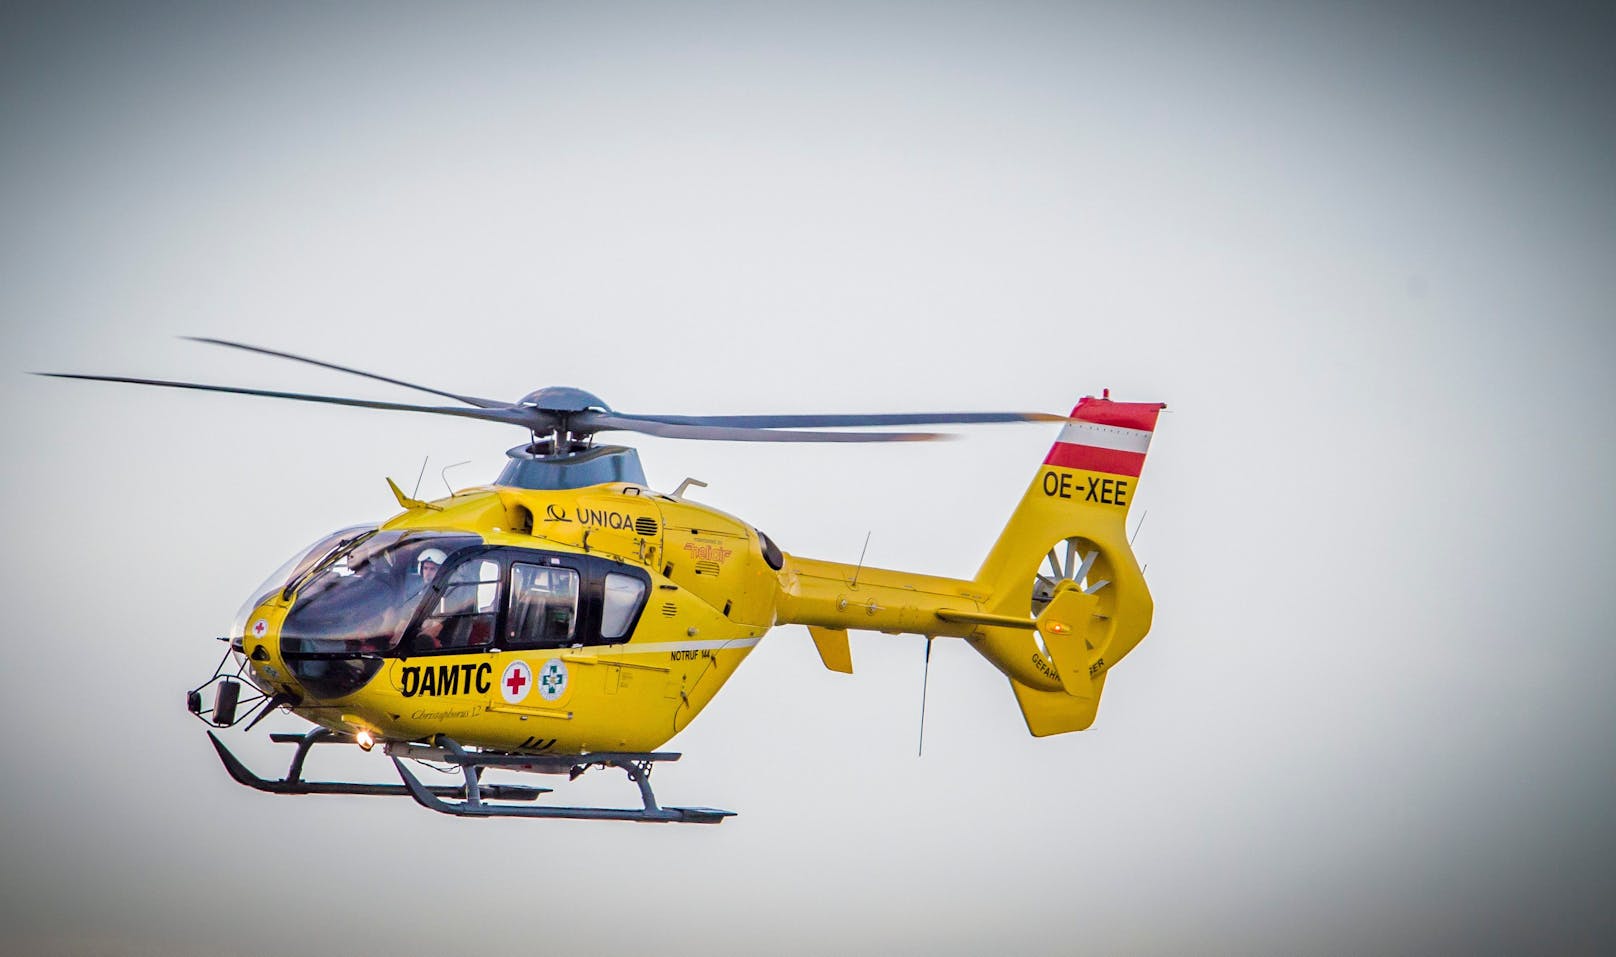 Crew von Christophorus führte Rettung per Tau durch - Wiener kam ins Spital